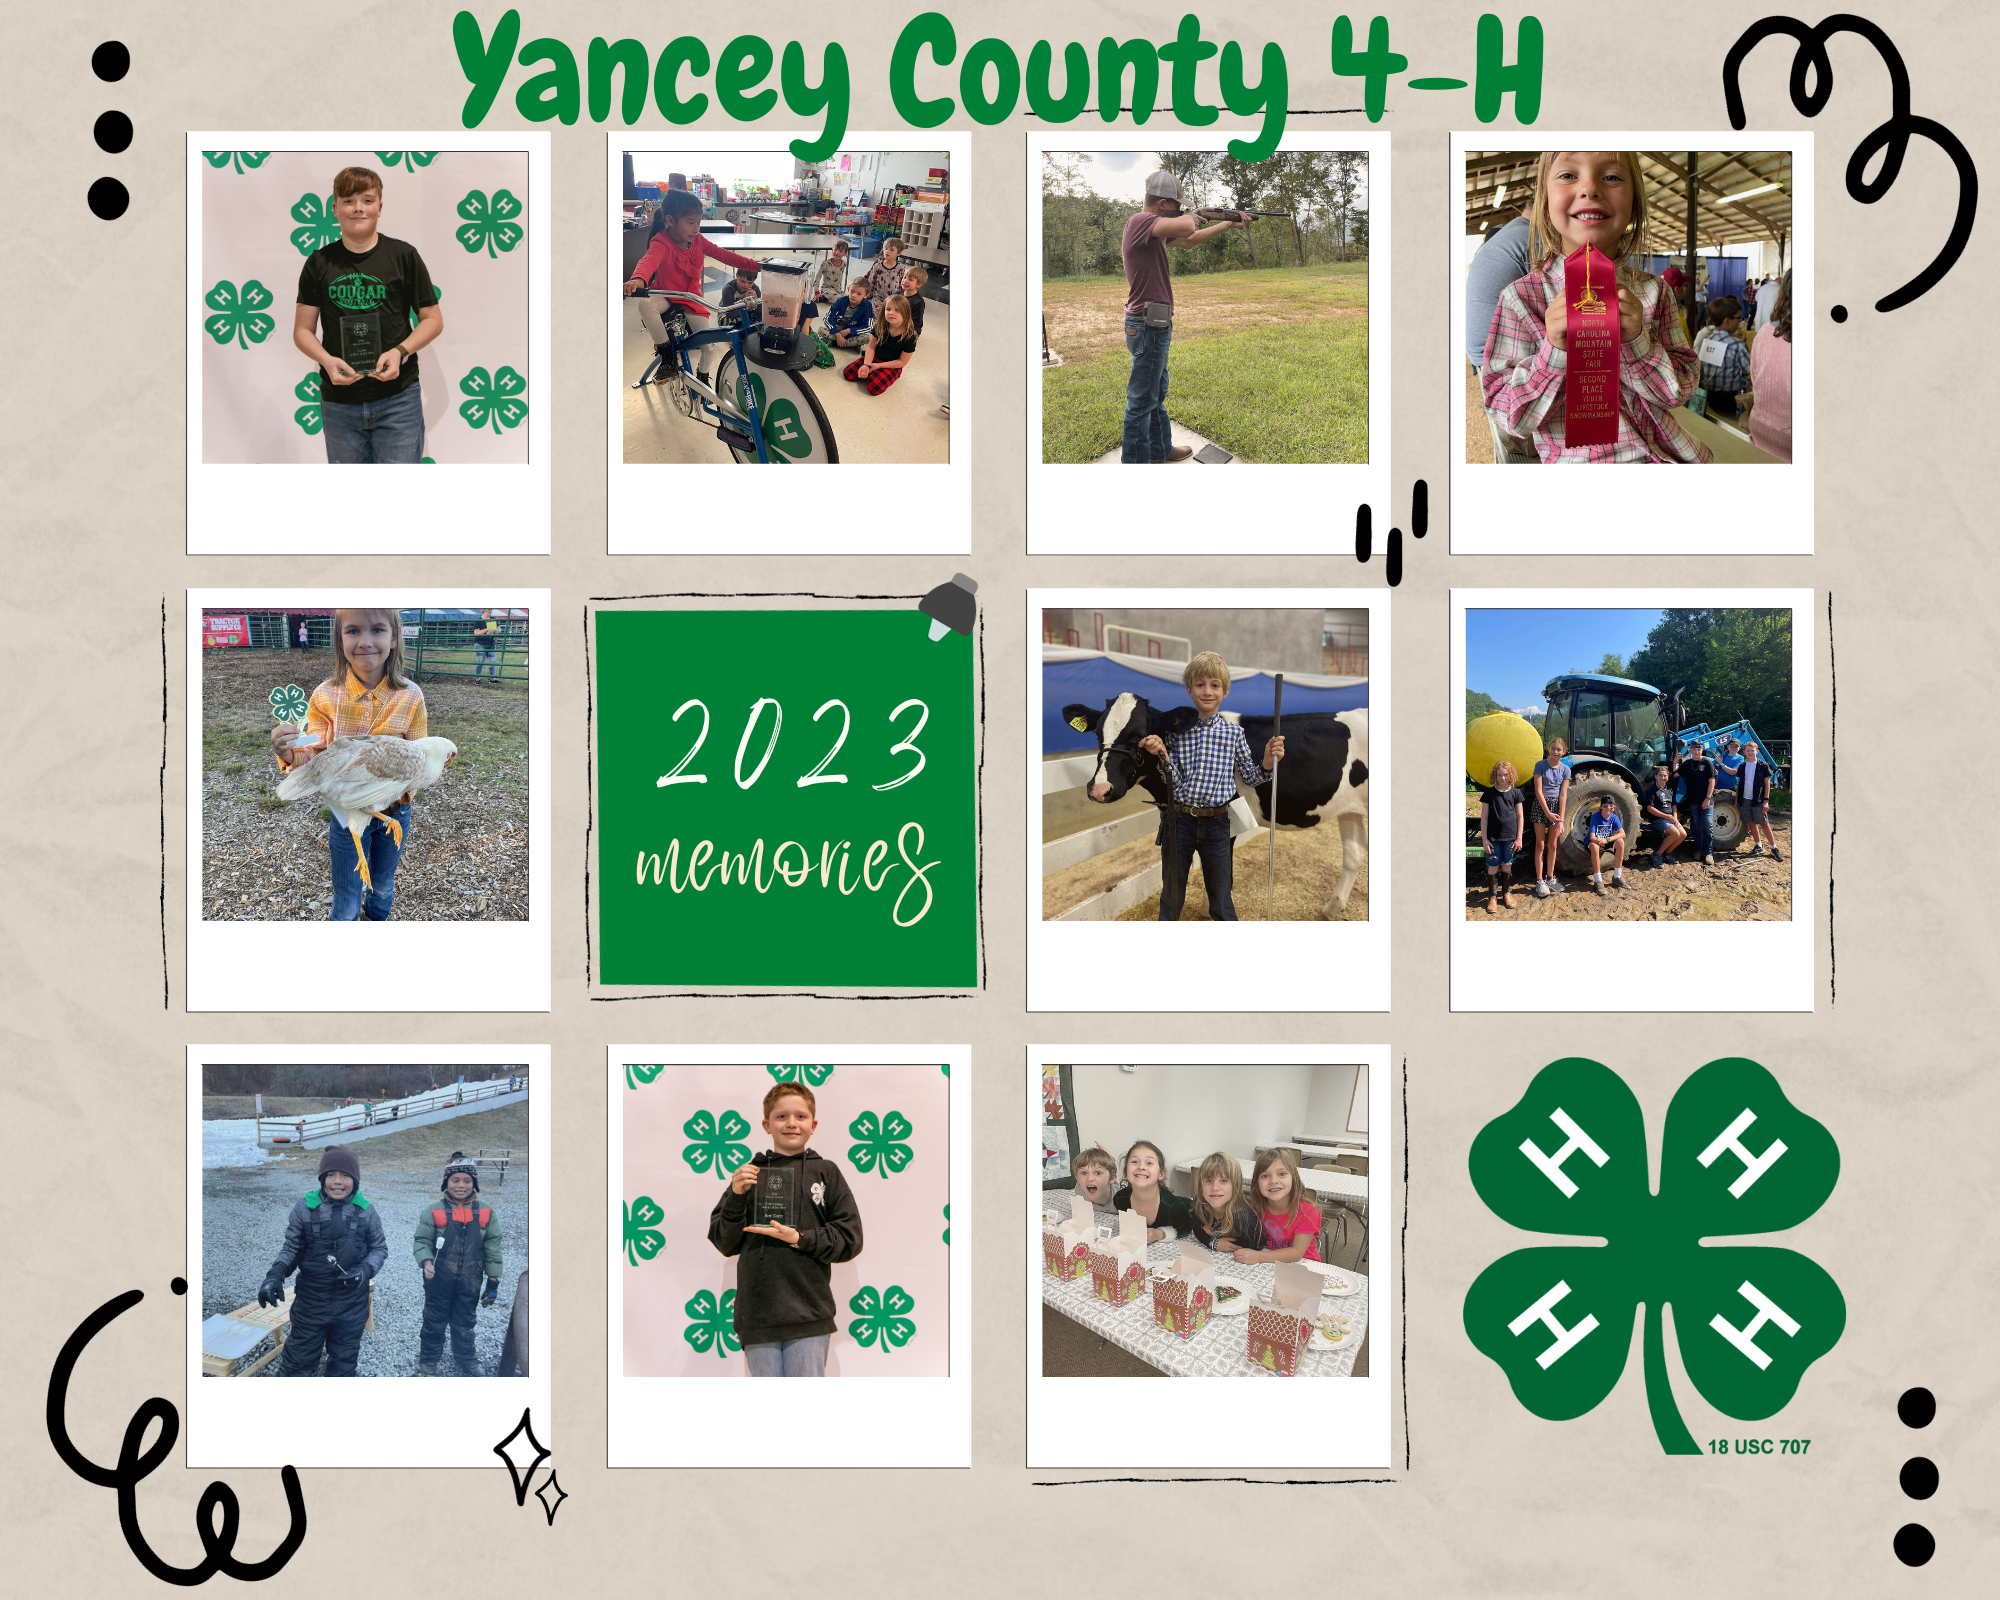 Yancey County 4-H